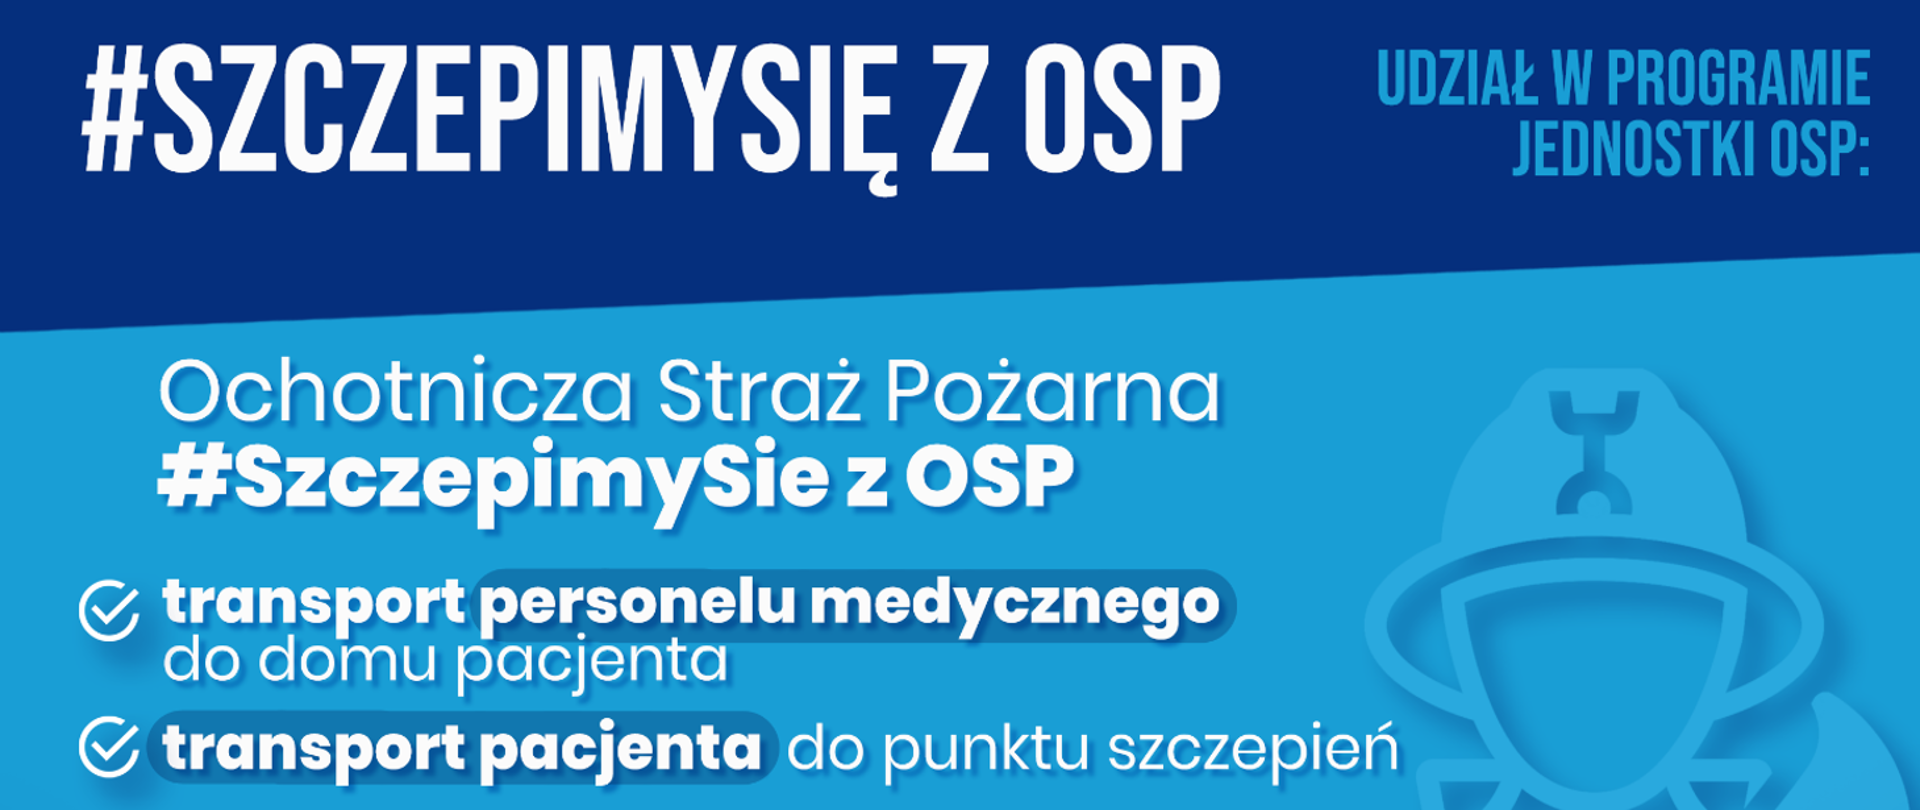 Szczepimy_się_z_OSP logo akcji